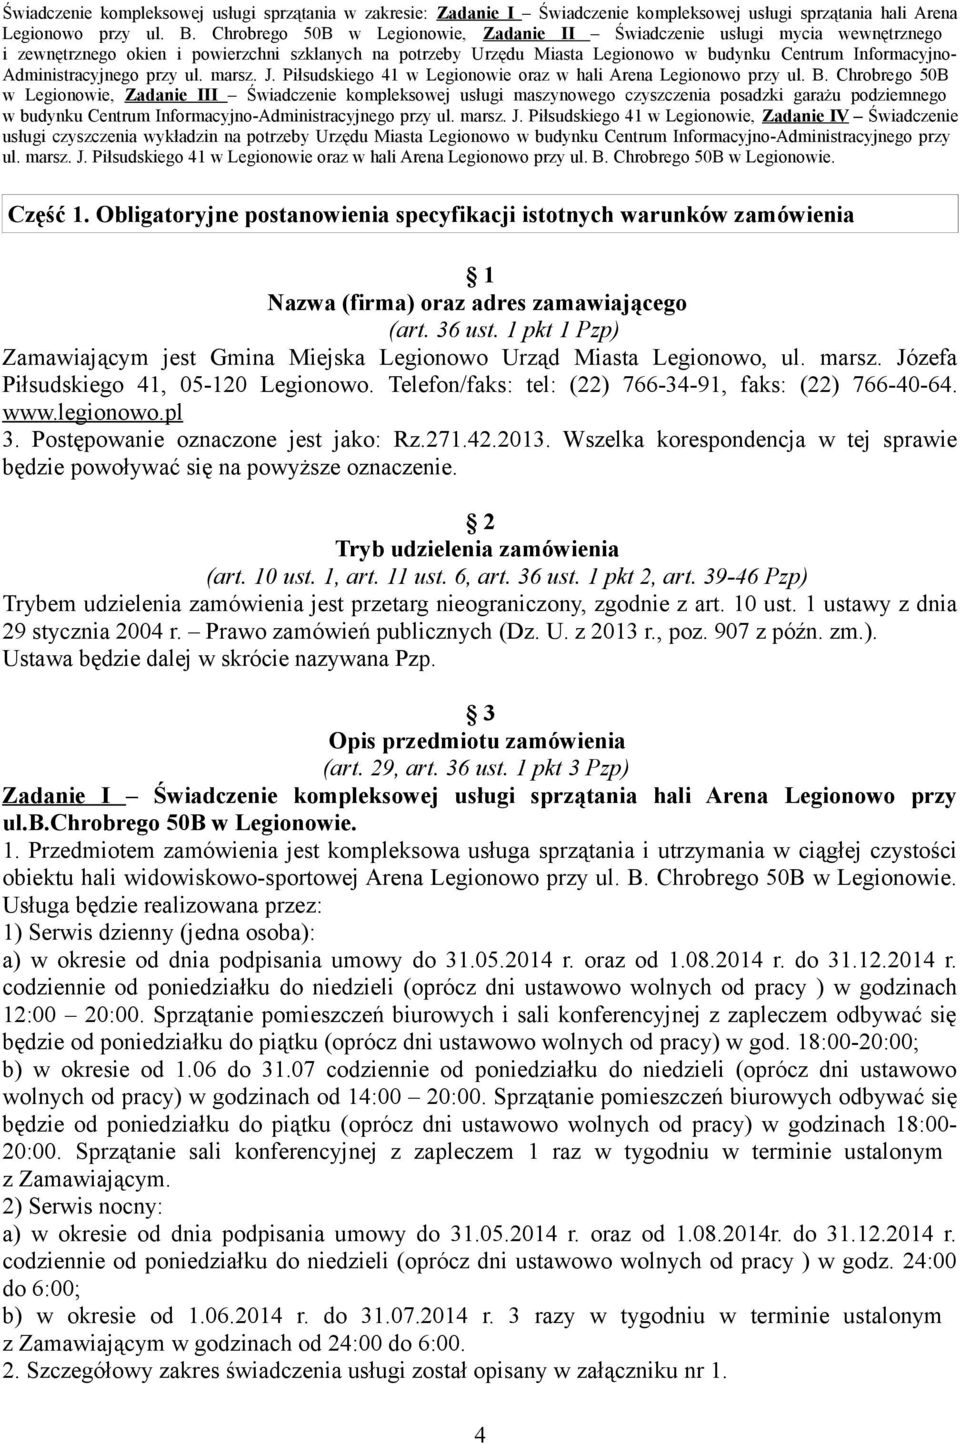 legionowo.pl 3. Postępowanie oznaczone jest jako: Rz.271.42.2013. Wszelka korespondencja w tej sprawie będzie powoływać się na powyższe oznaczenie. 2 Tryb udzielenia zamówienia (art. 10 ust. 1, art.